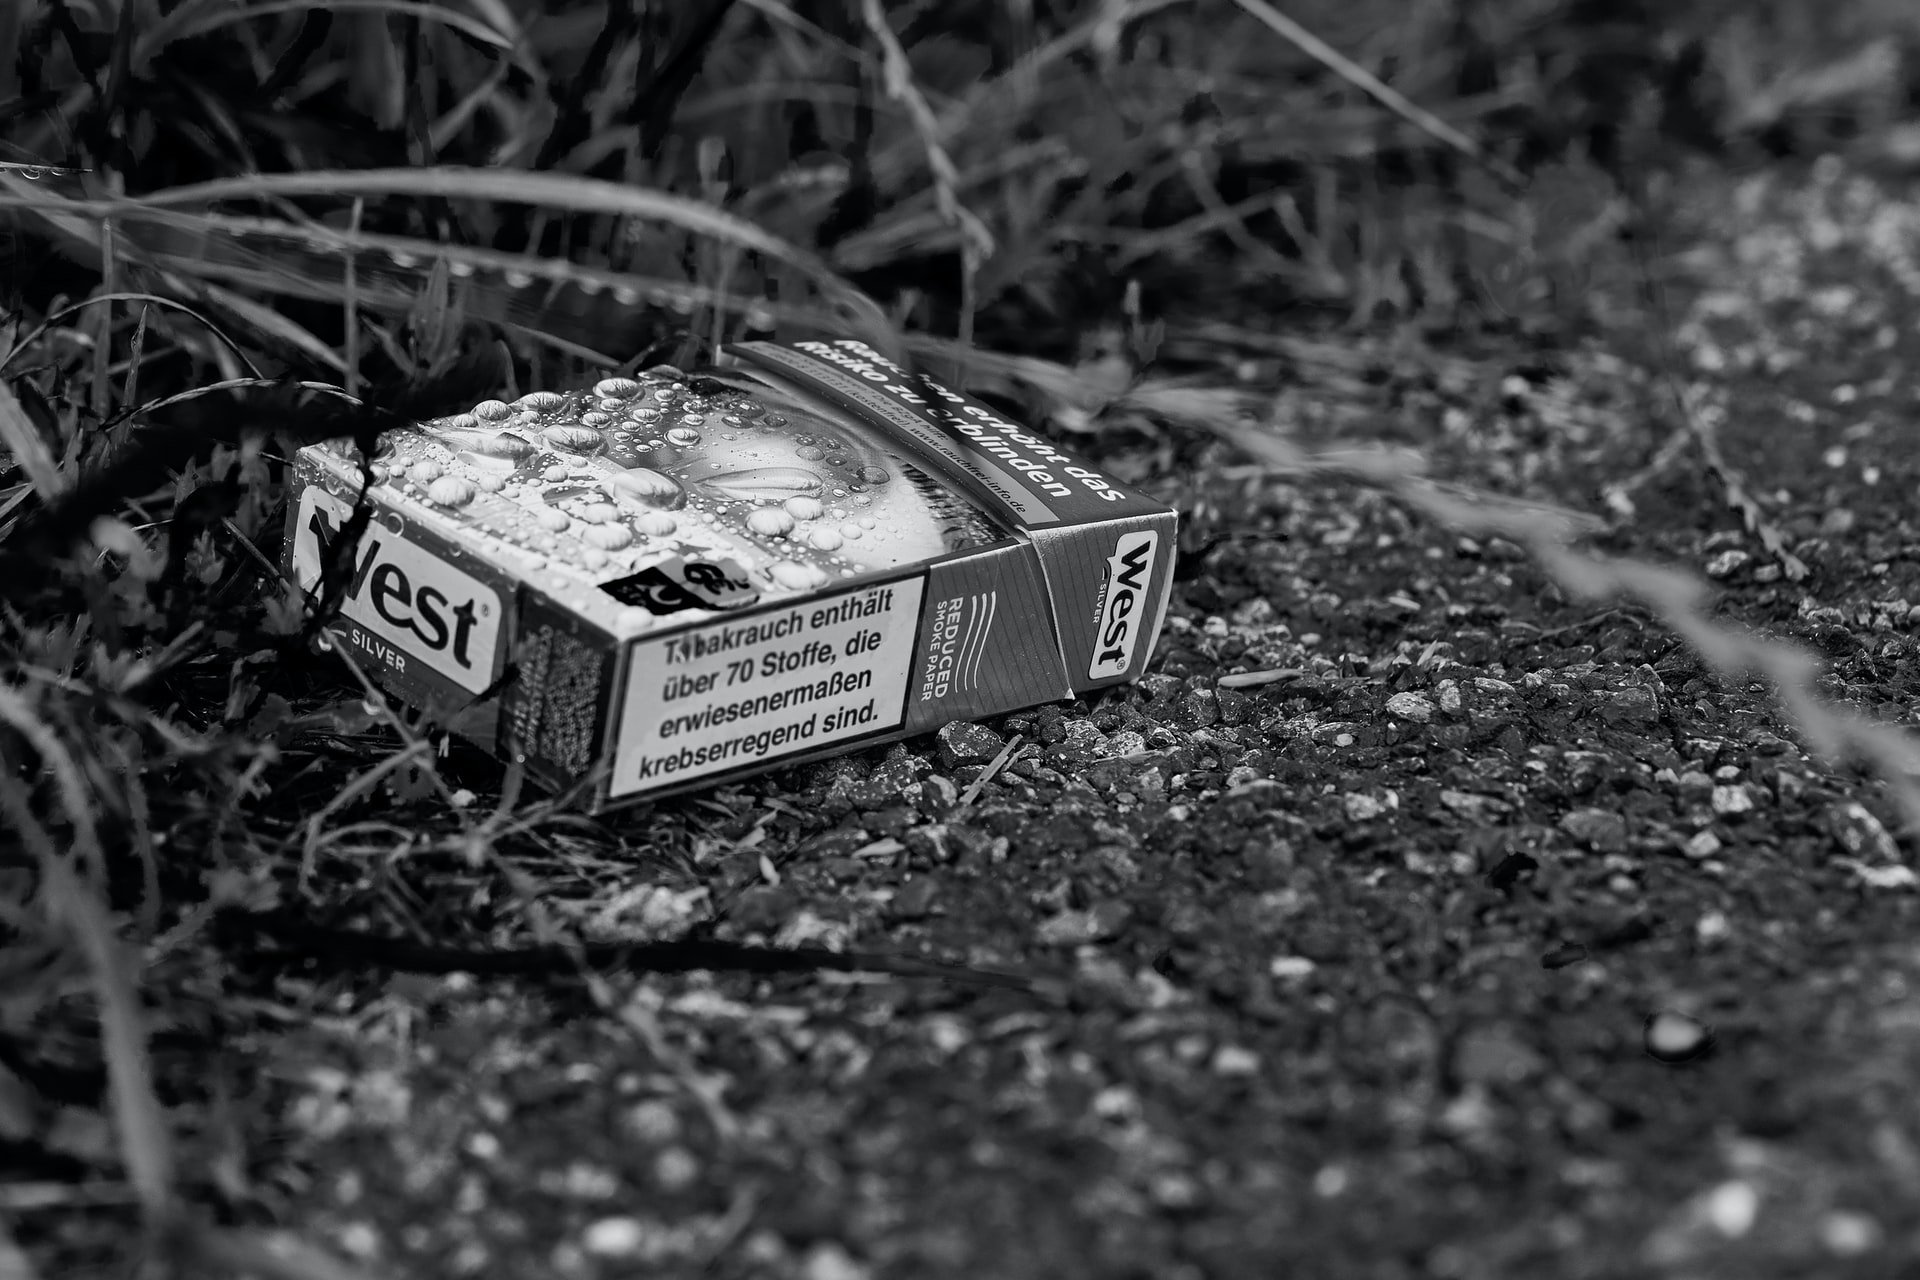 Müll im Wald - eine achtlos weggeworfene Zigarettenschachtel